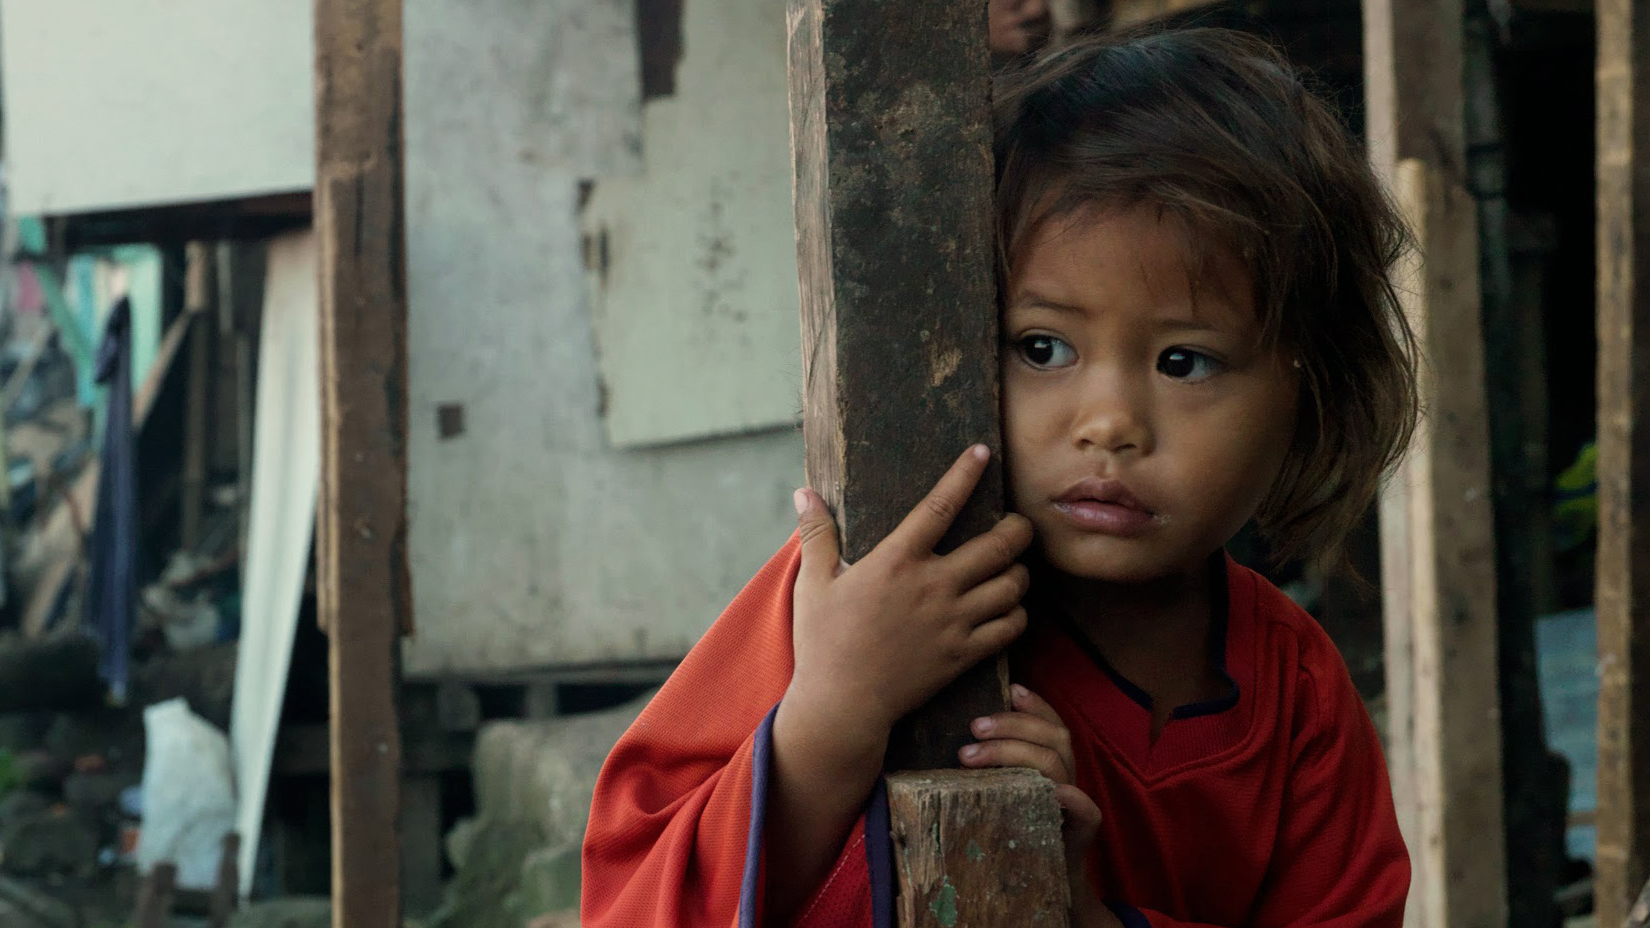 Philippine's street children